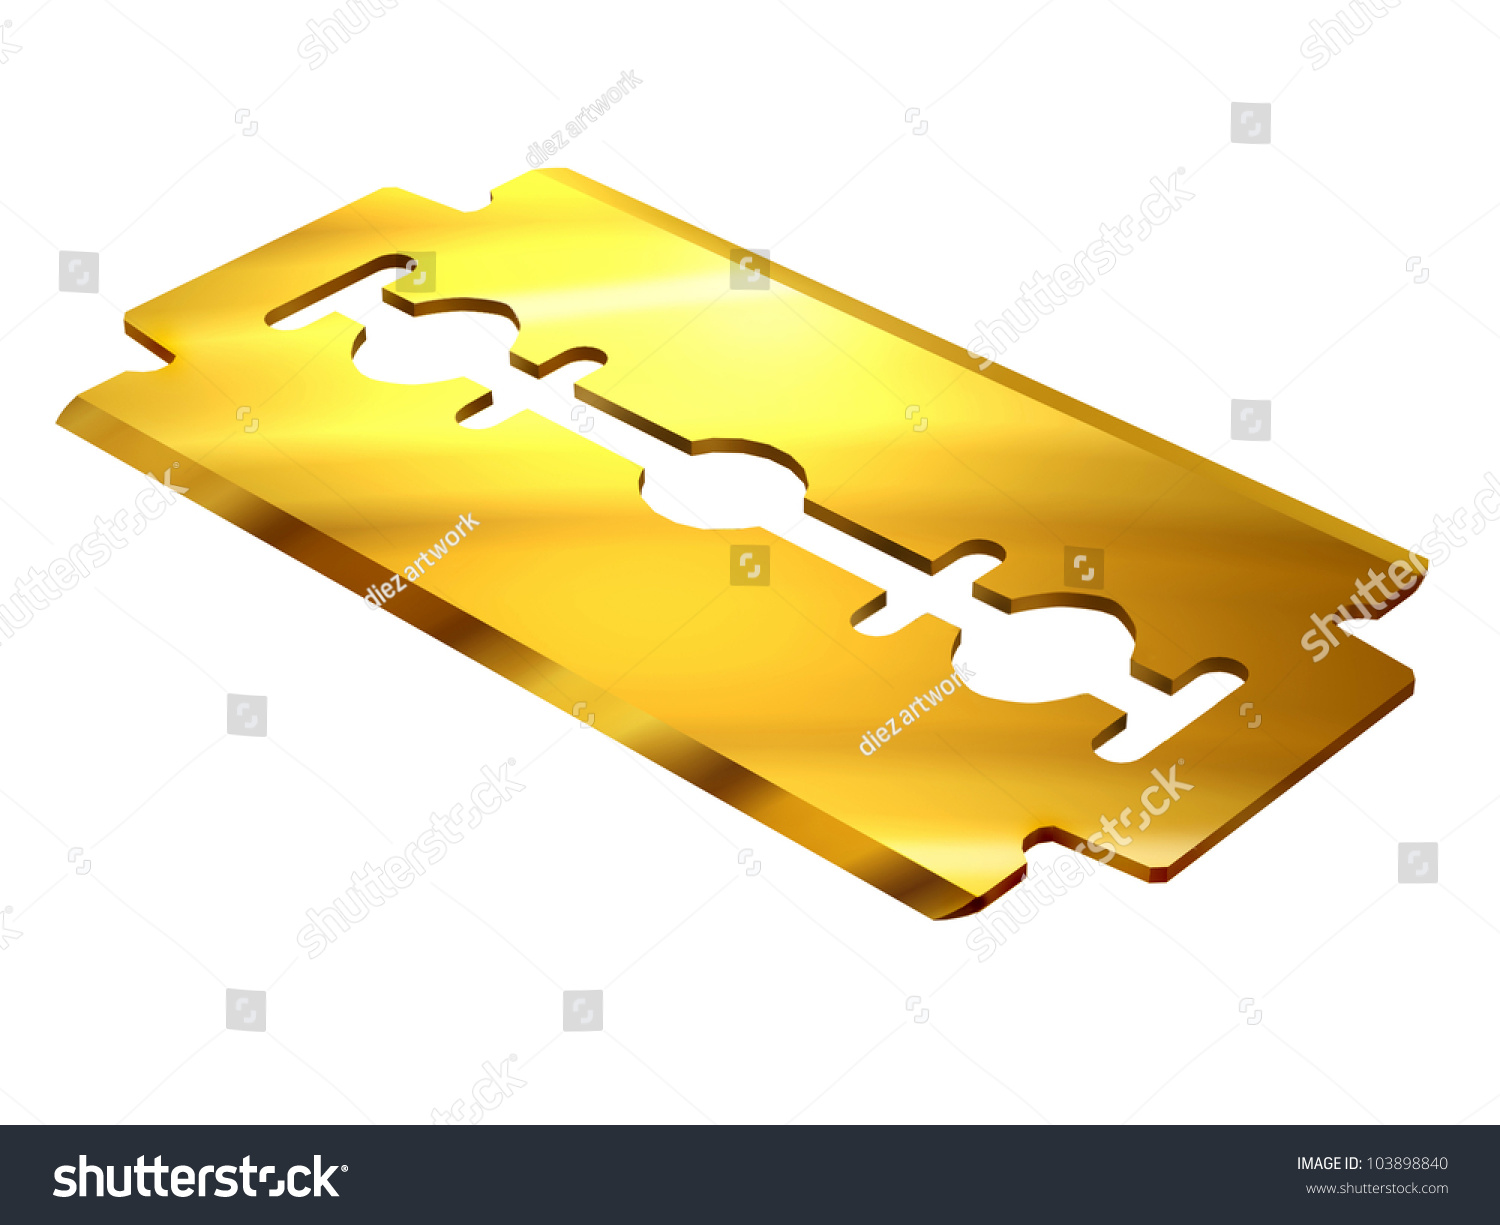 NEU razor blade gold TOP GOLD Rasierklinge zum schaben oder hacken 